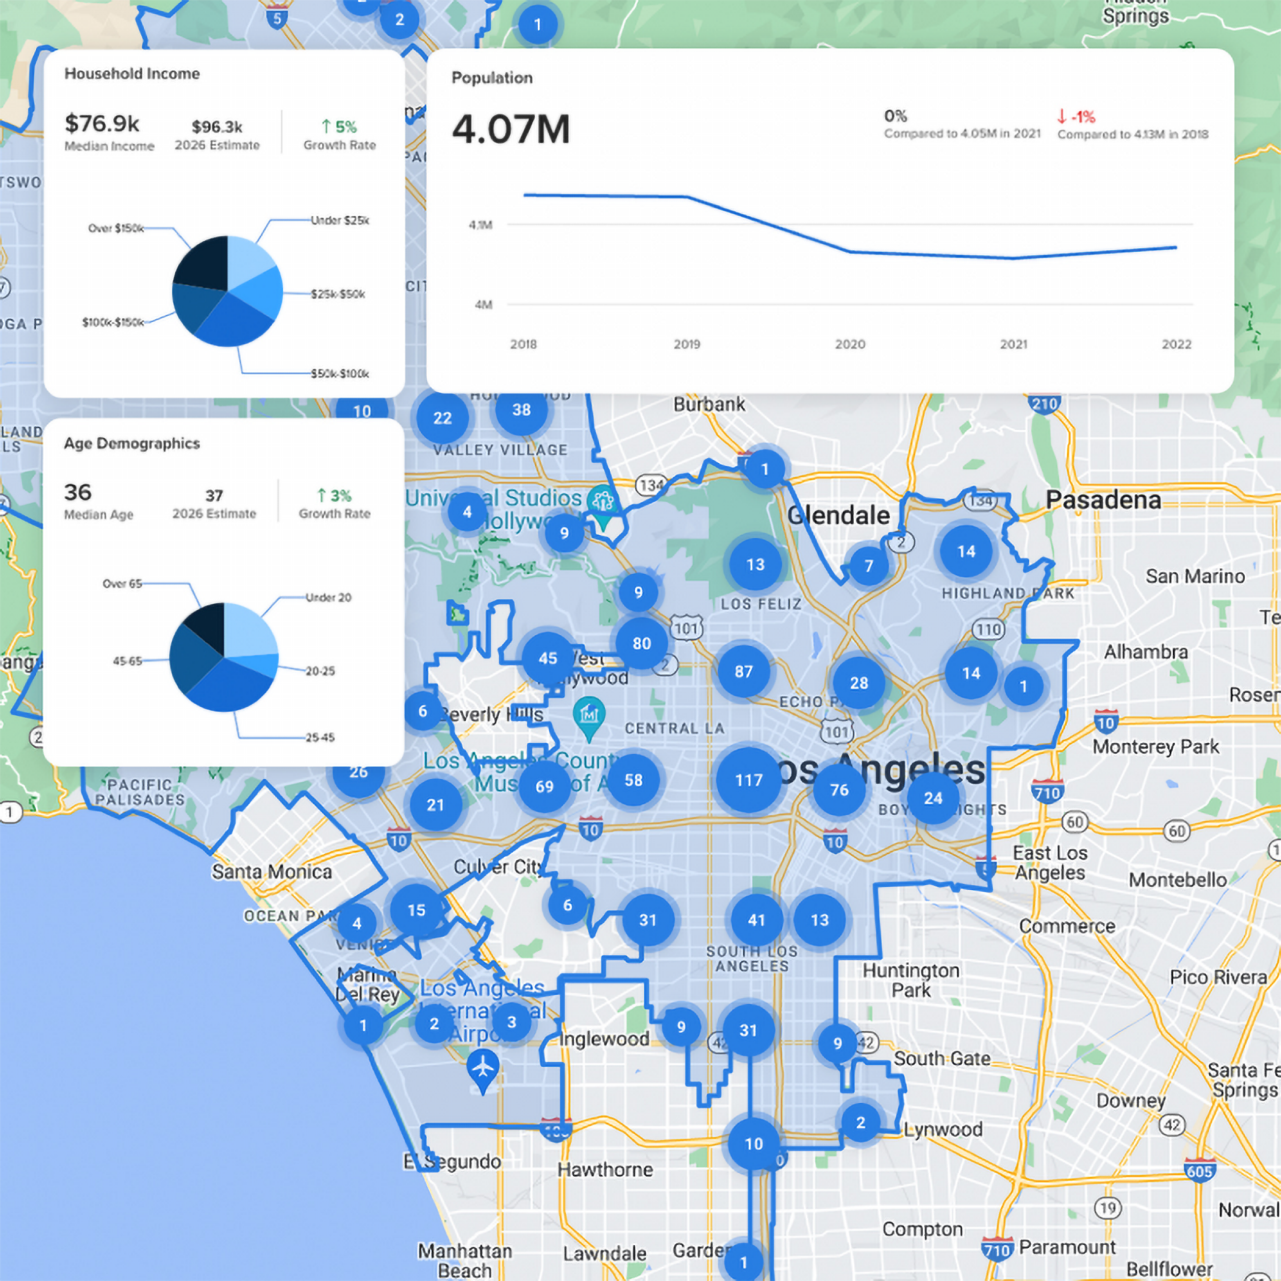 L'applicazione immobiliare Crexi visualizza i dati demografici su una mappa di Los Angeles con i numeri nei cerchi blu.